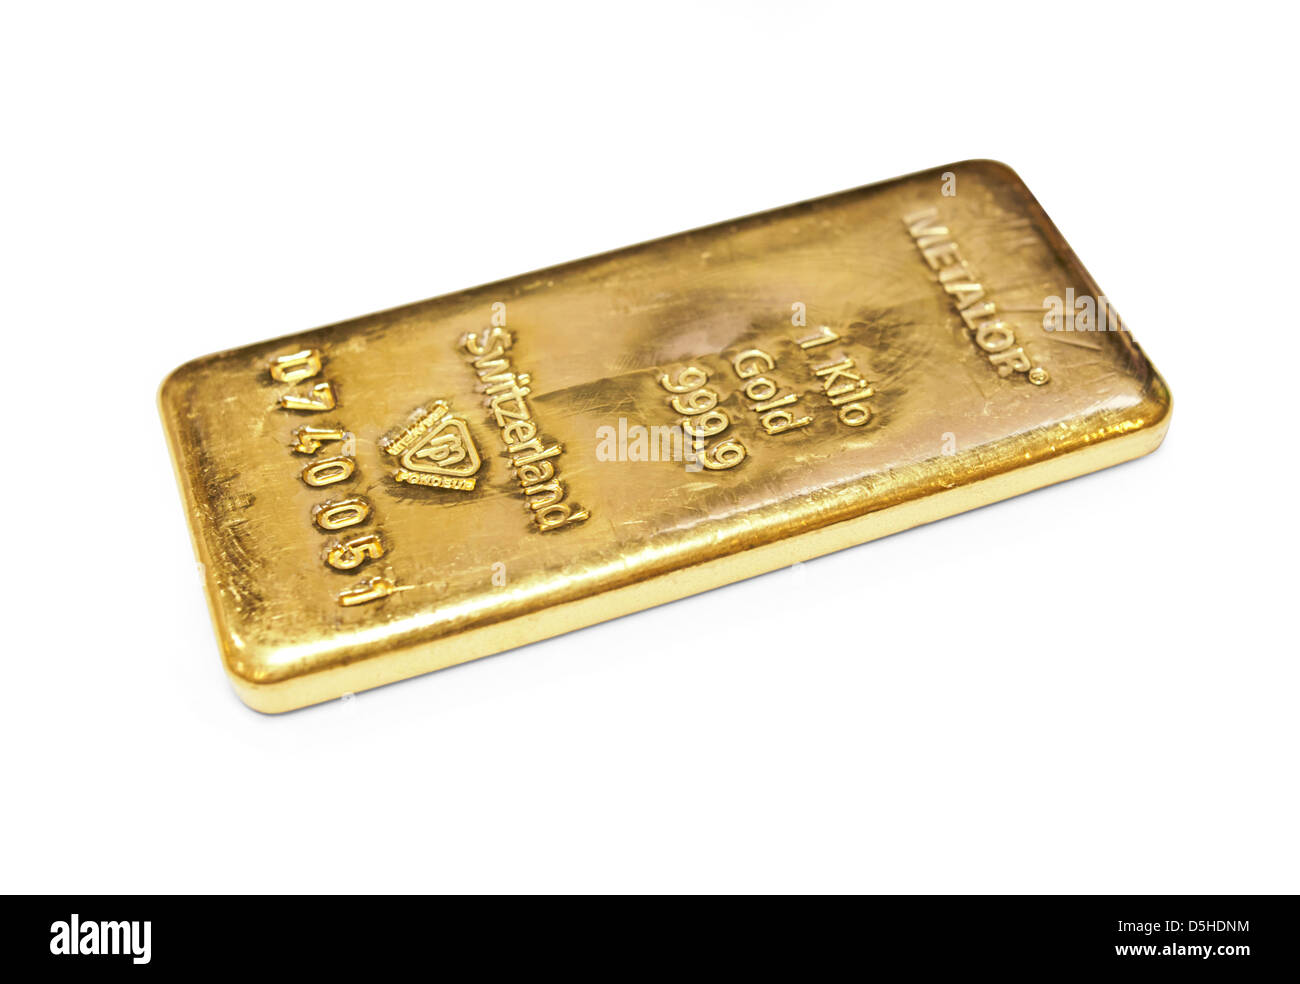 Ein Kilogramm gold bar auf weißem Hintergrund Stockfoto